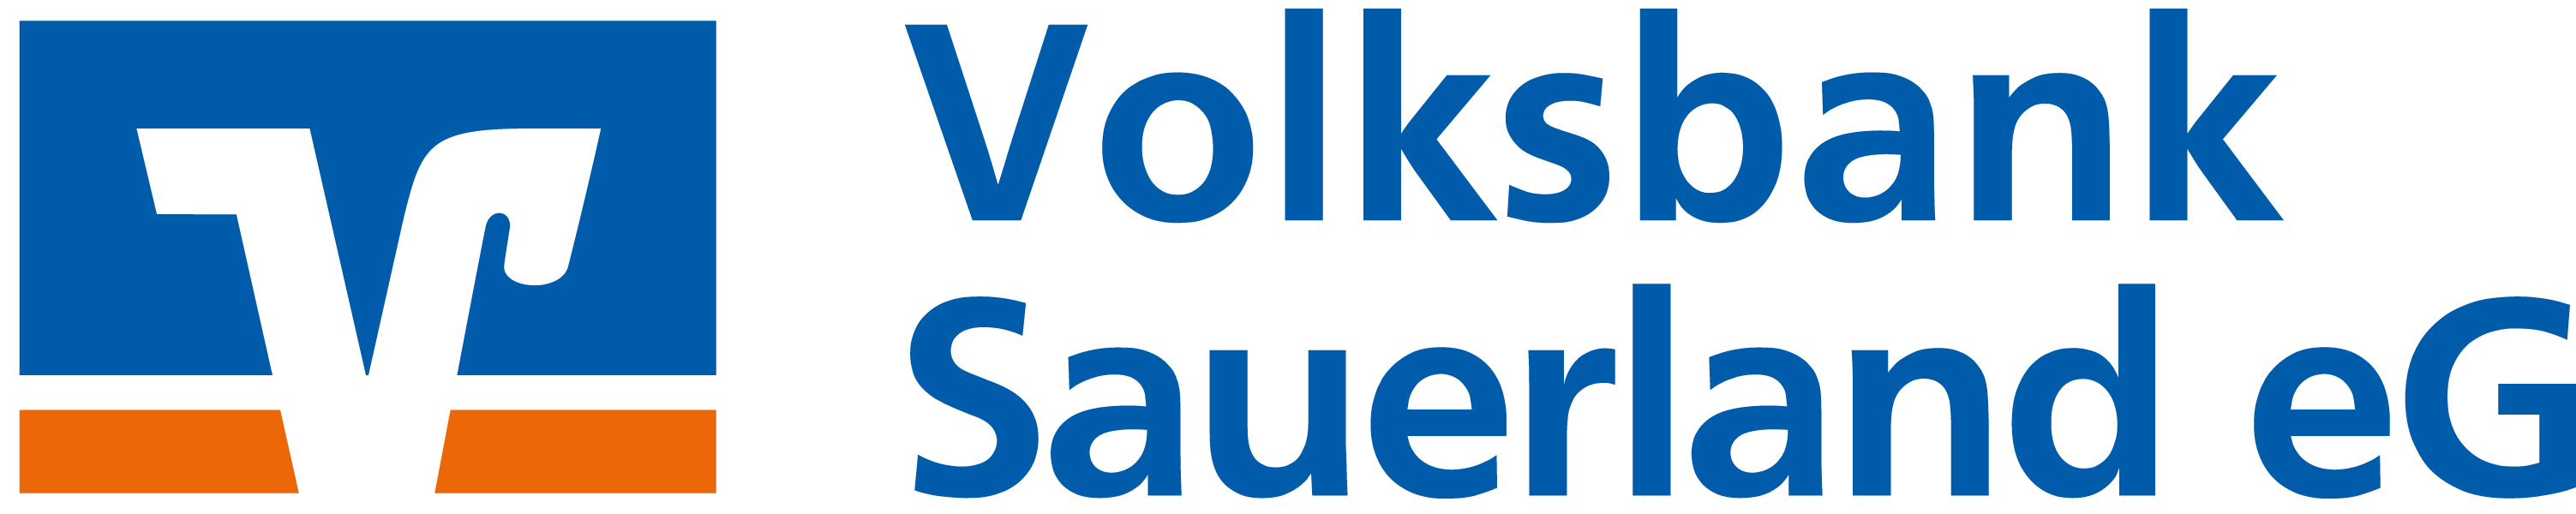 Volksbank Sauerland eG Logo